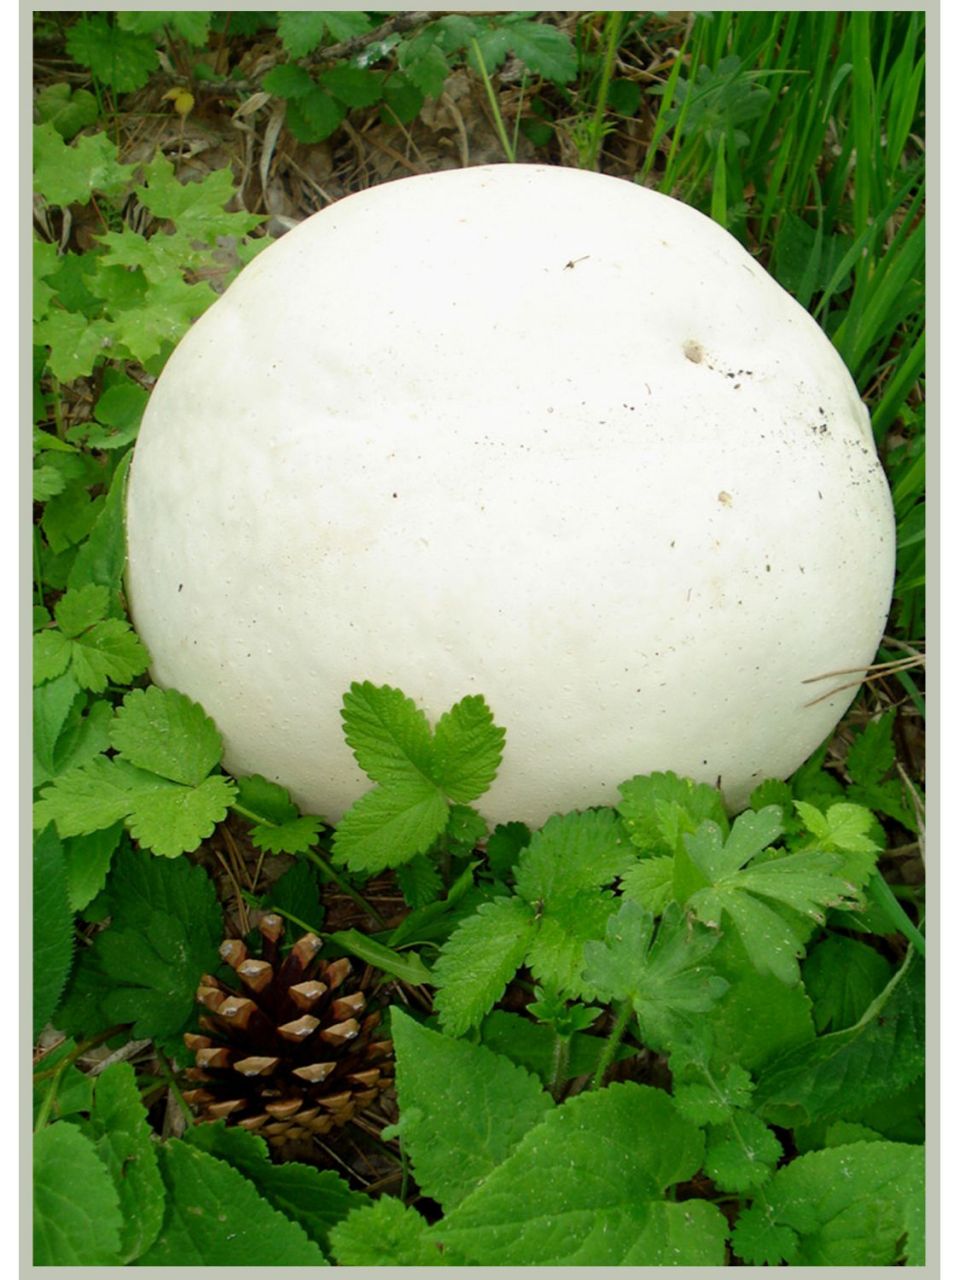 真菌之一,足球状子实体重量通常超过4kg 外表皮特别像皮革,最后会腐烂